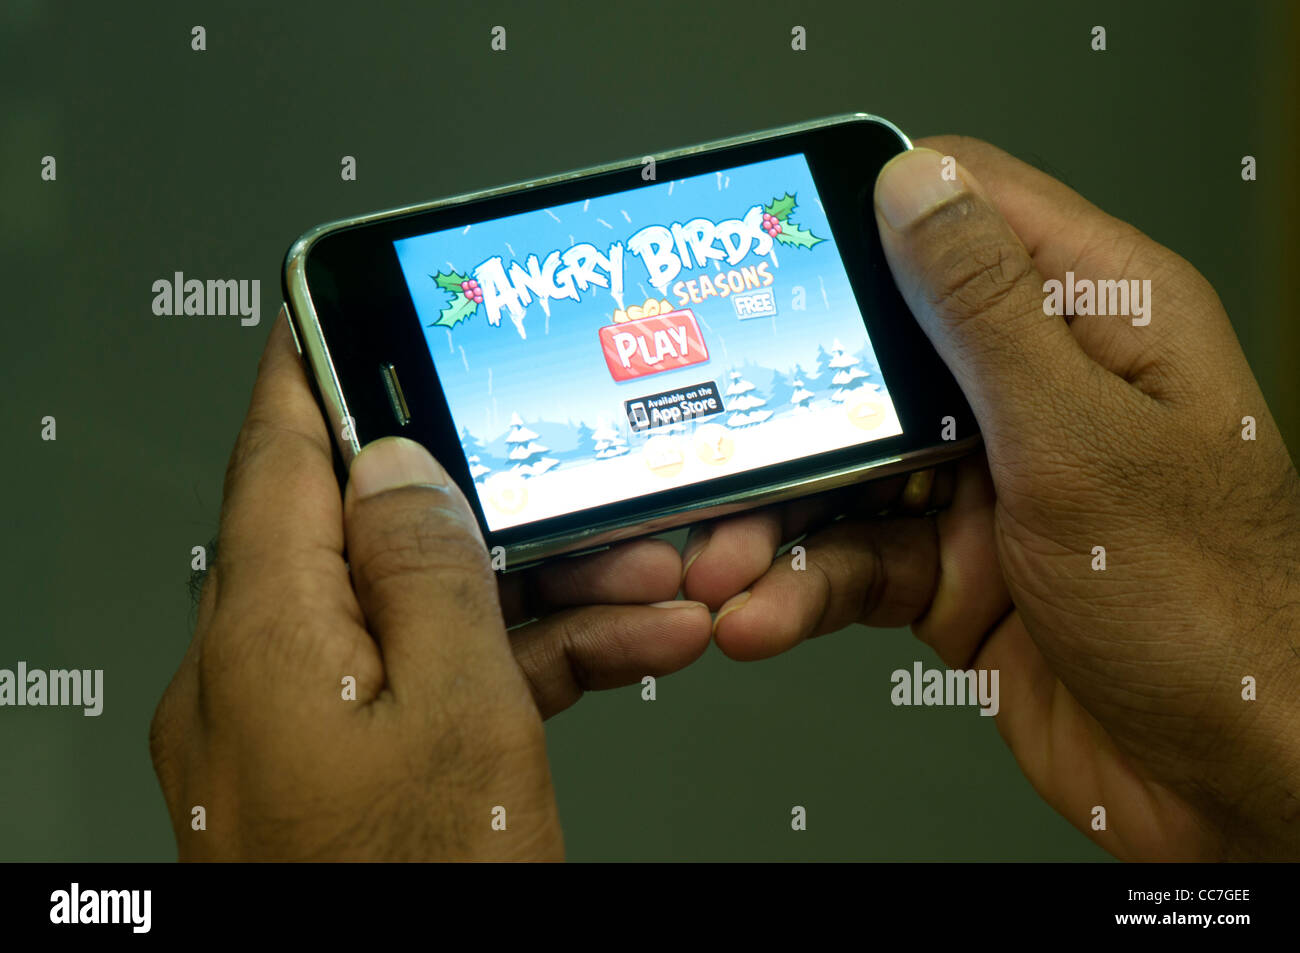 Angry Birds seasons jeu sur téléphone mobile iphone Banque D'Images